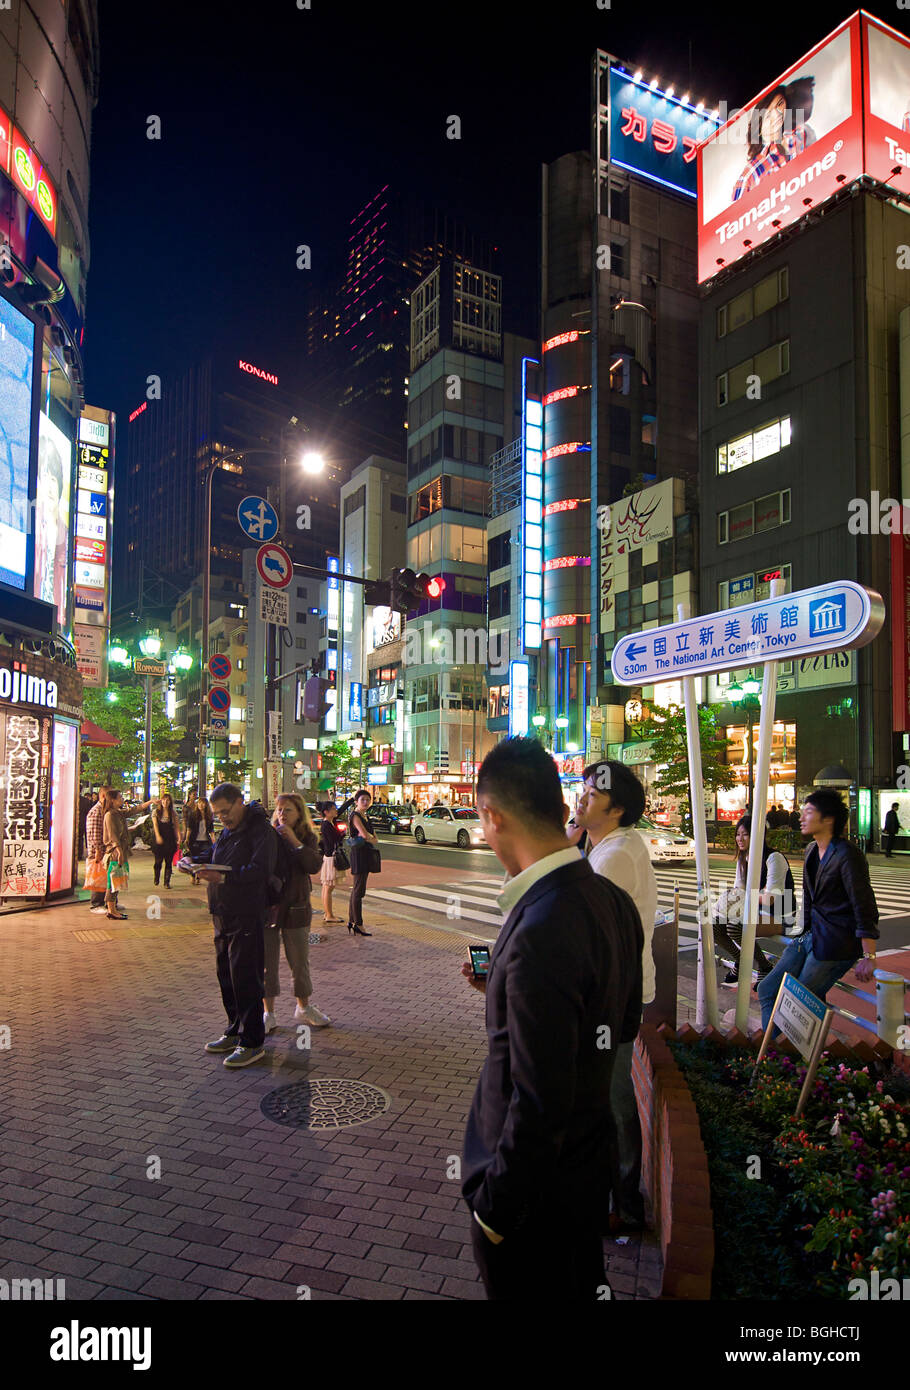 L'attente sur un coin de rue. Scène de nuit éclairé au néon, Roppongi Tokyo, Japon Banque D'Images